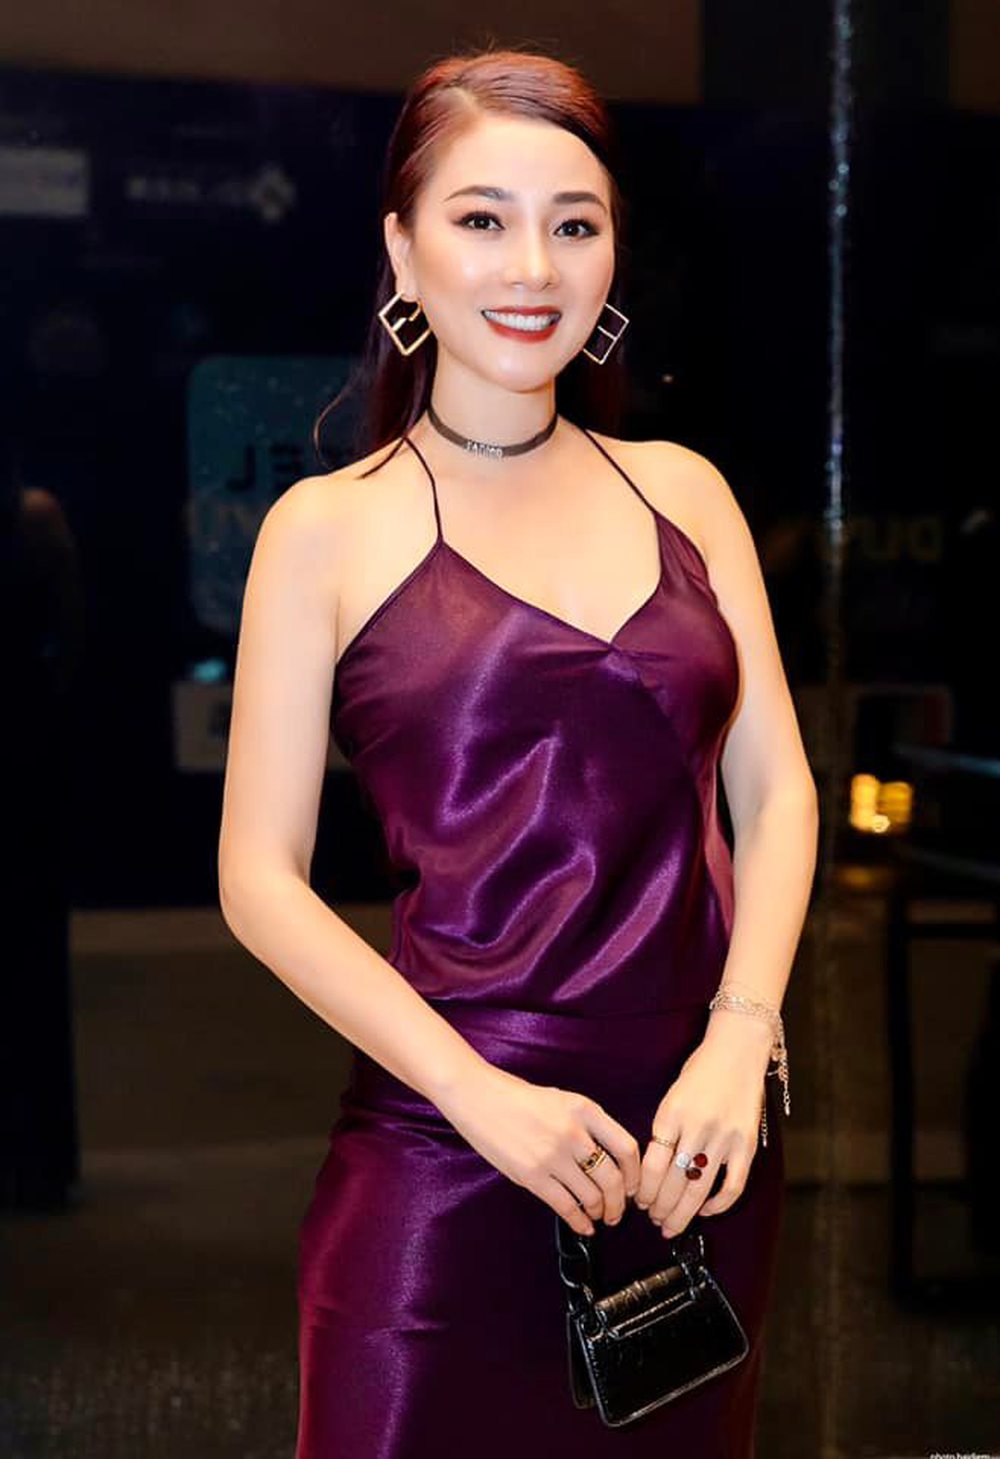 Hoa hậu Quý bà Hoàng Yến sau 13 năm đăng quang: Cuộc sống sung túc, U50 như gái đôi mươi - ảnh 7